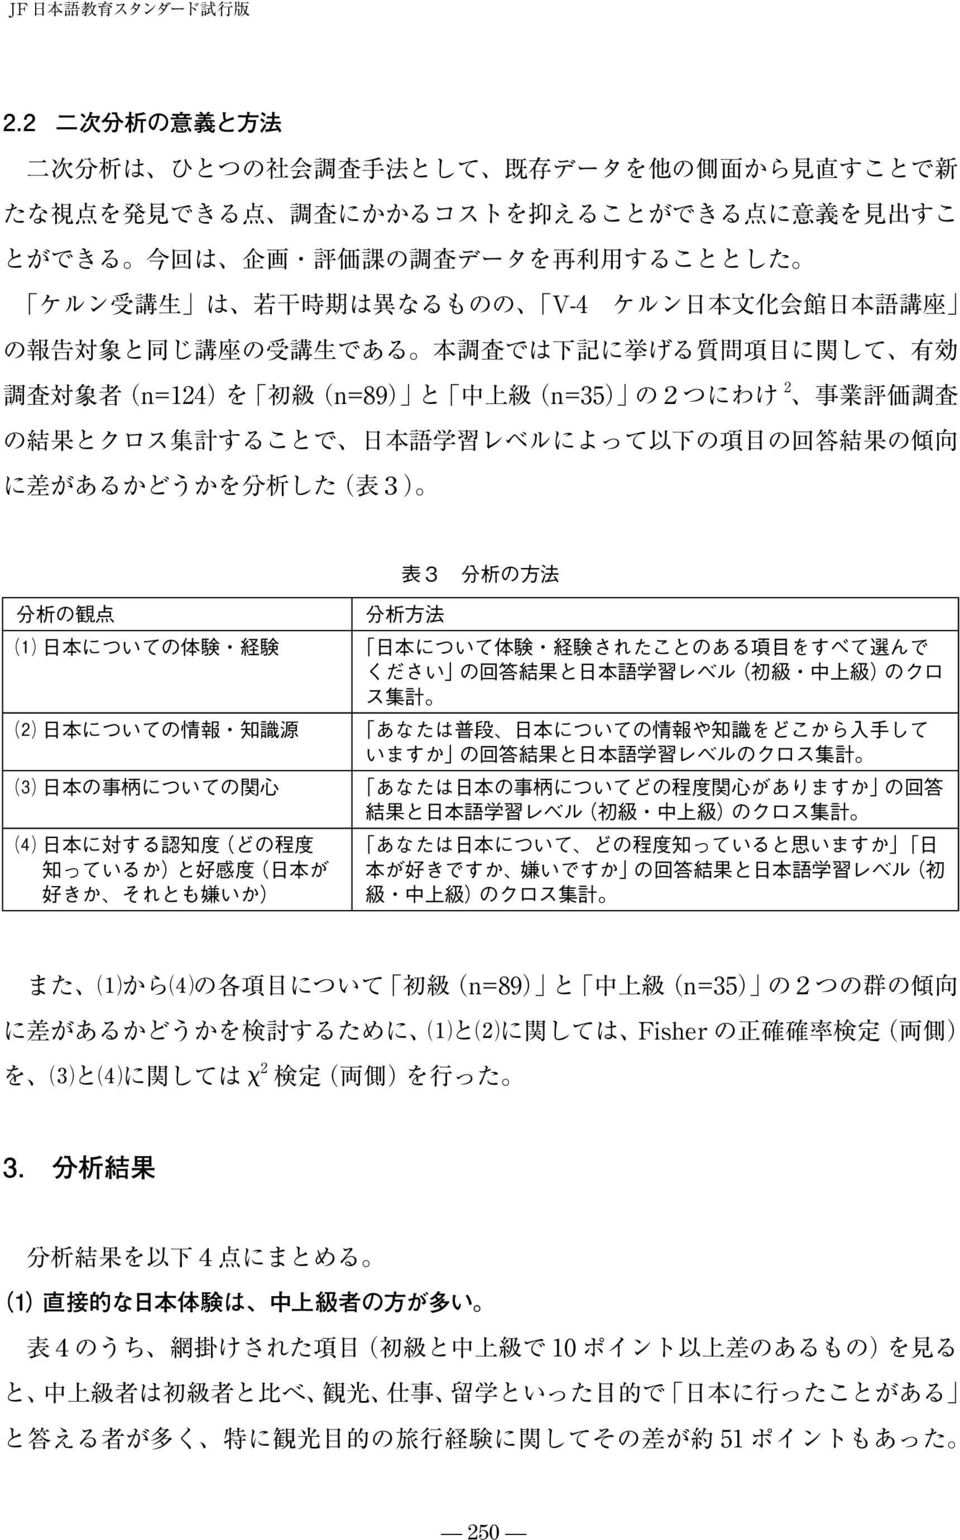 生 は 若 干 時 期 は 異 なるものの V-4 ケルン 日 本 文 化 会 館 日 本 語 講 座 の 報 告 対 象 と 同 じ 講 座 の 受 講 生 である 本 調 査 では 下 記 に 挙 げる 質 問 項 目 に 関 して 有 効 調 査 対 象 者 (n=124)を 初 級 (n=89) と 中 上 級 (n=35) の2つにわけ 2 事 業 評 価 調 査 の 結 果 とクロス